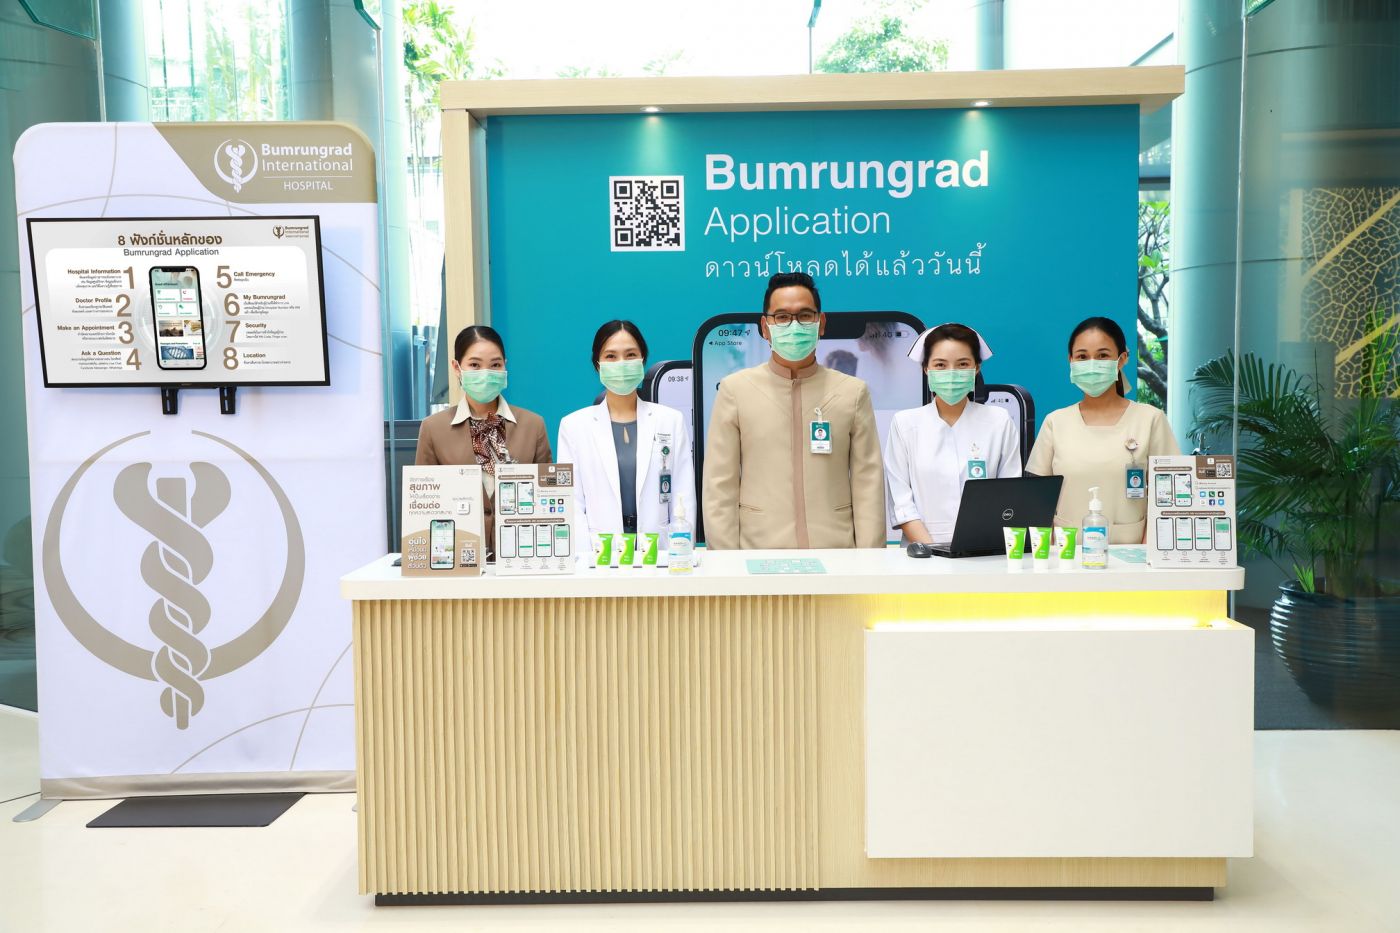 บำรุงราษฎร์ เปิดตัว “Bumrungrad Application” เข้าถึงข้อมูลสุขภาพและบริการ ได้ง่าย ๆ ทุกที่ทุกเวลา